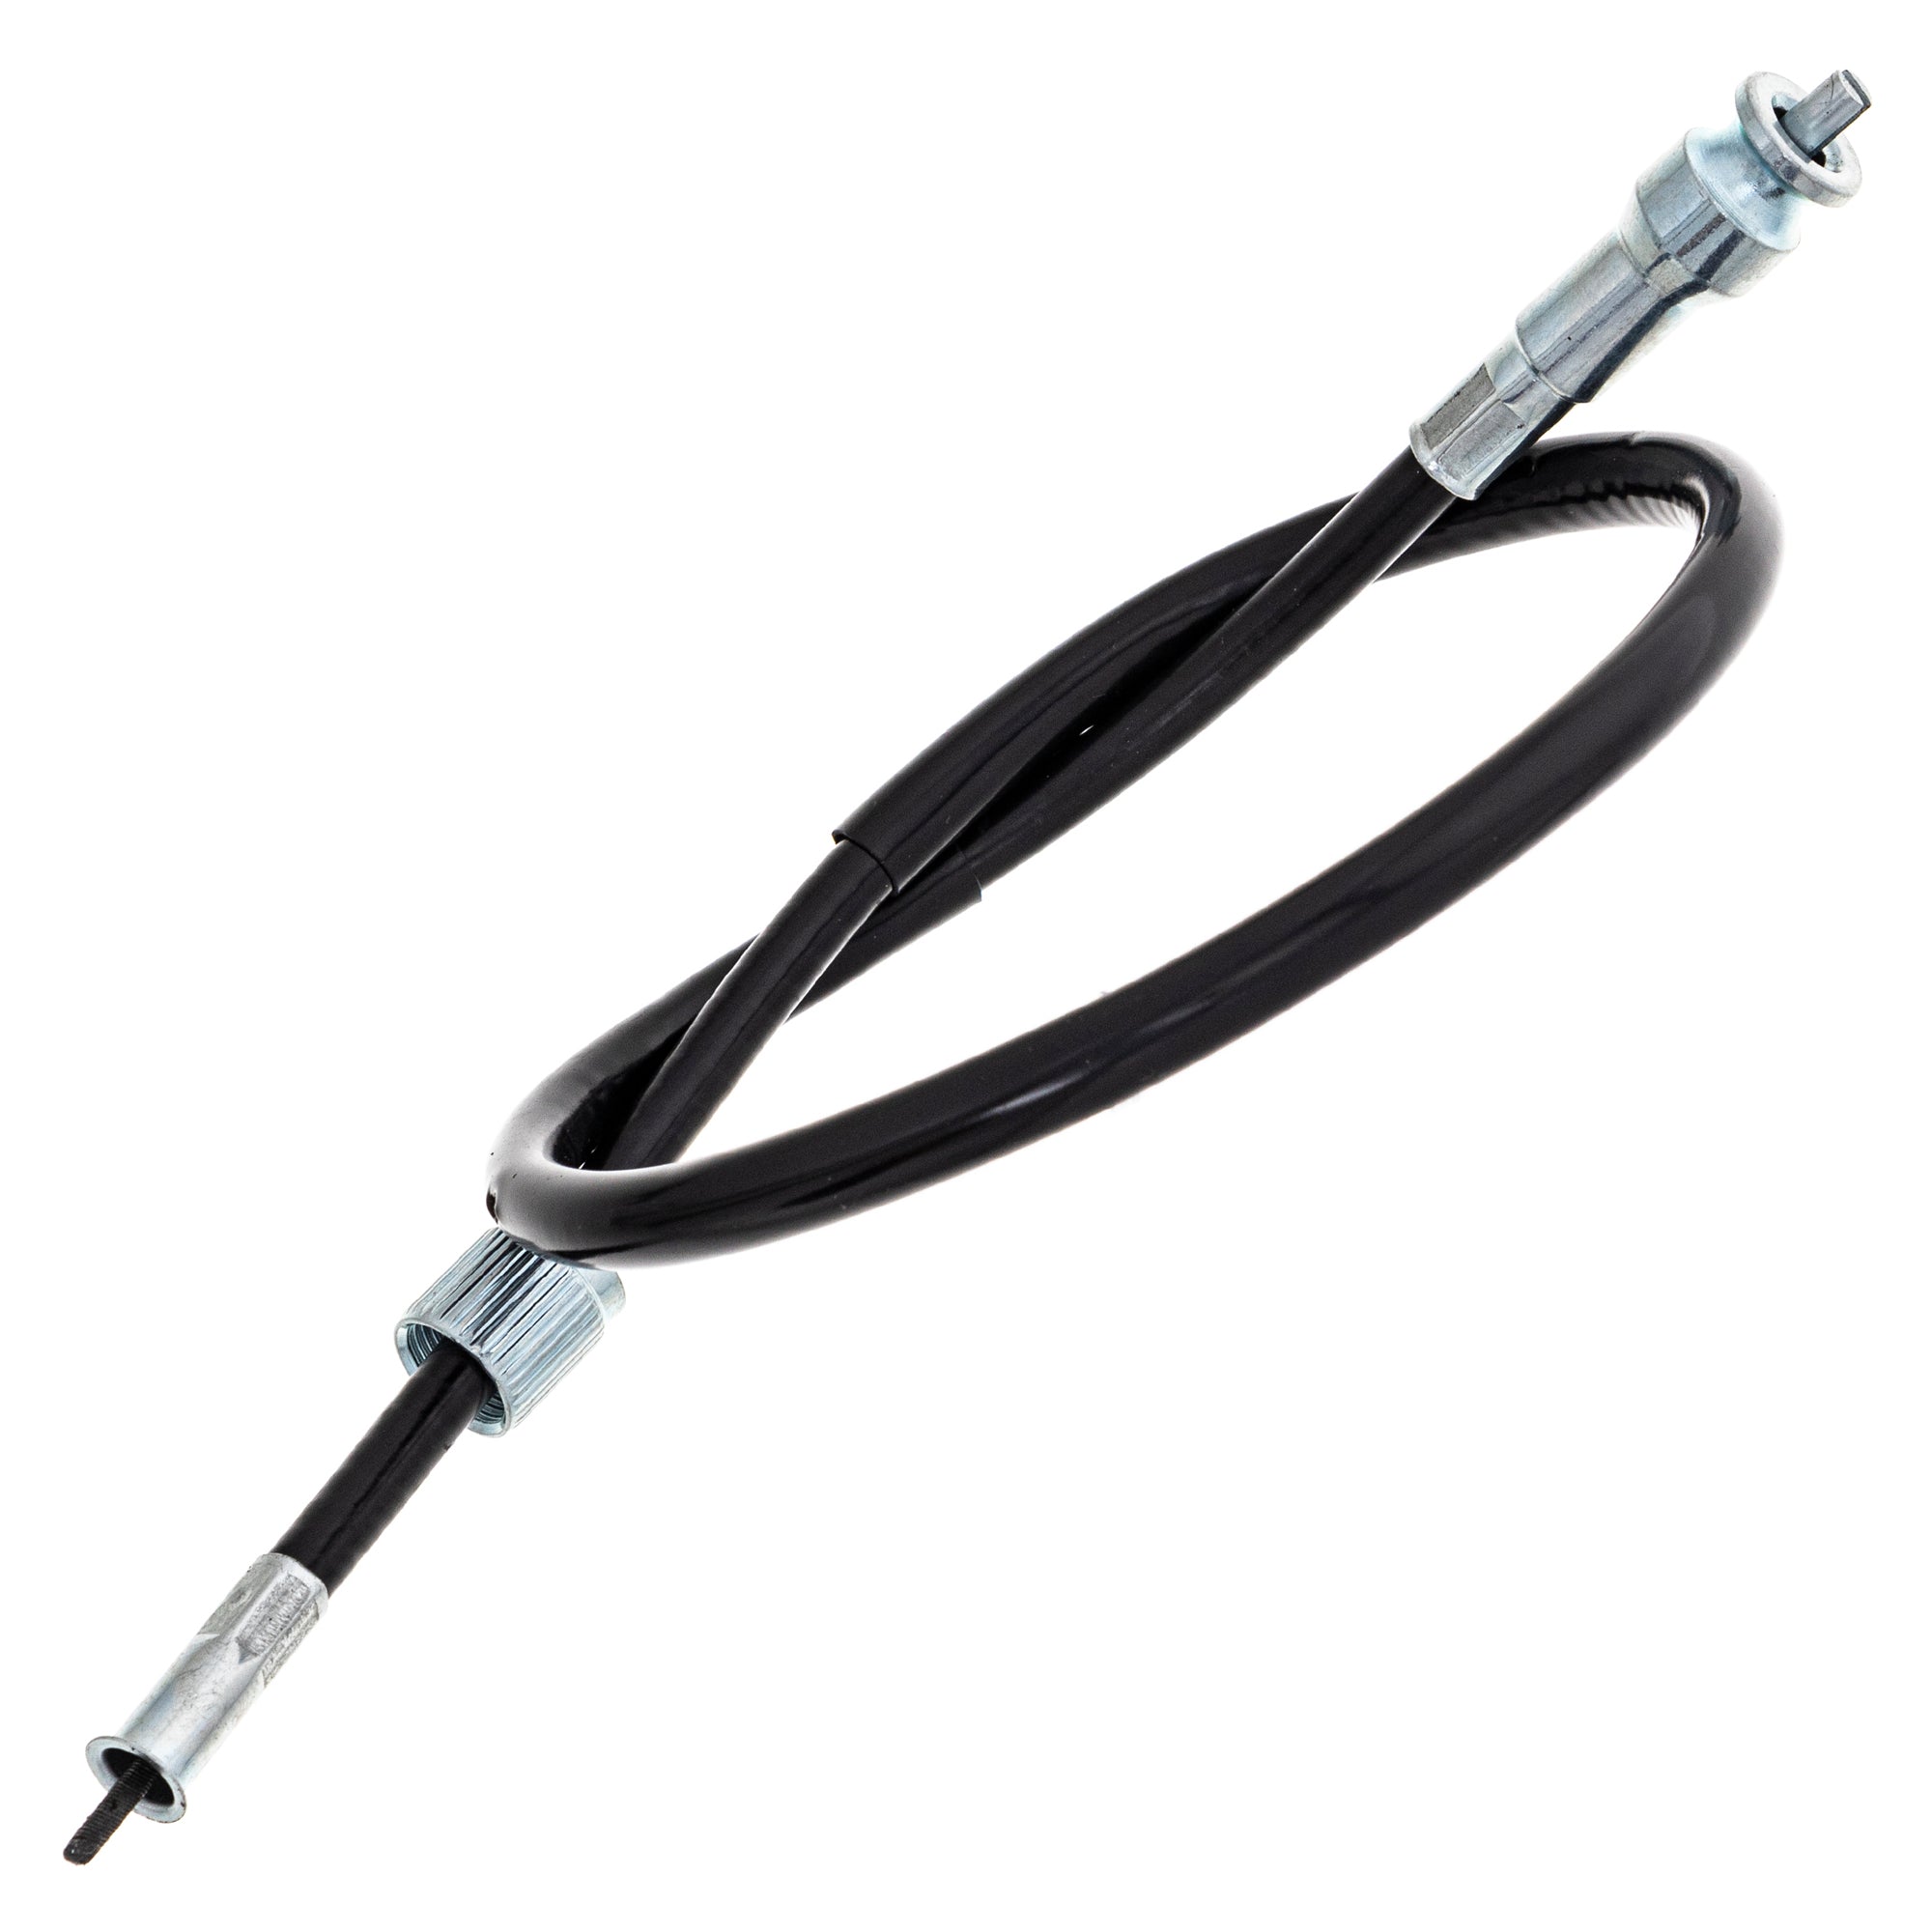 Tachometer Cable For Honda 37260-MA5-670 37260-MA1-730 37260-MA1-000 37260-KB7-010 37260-461-000